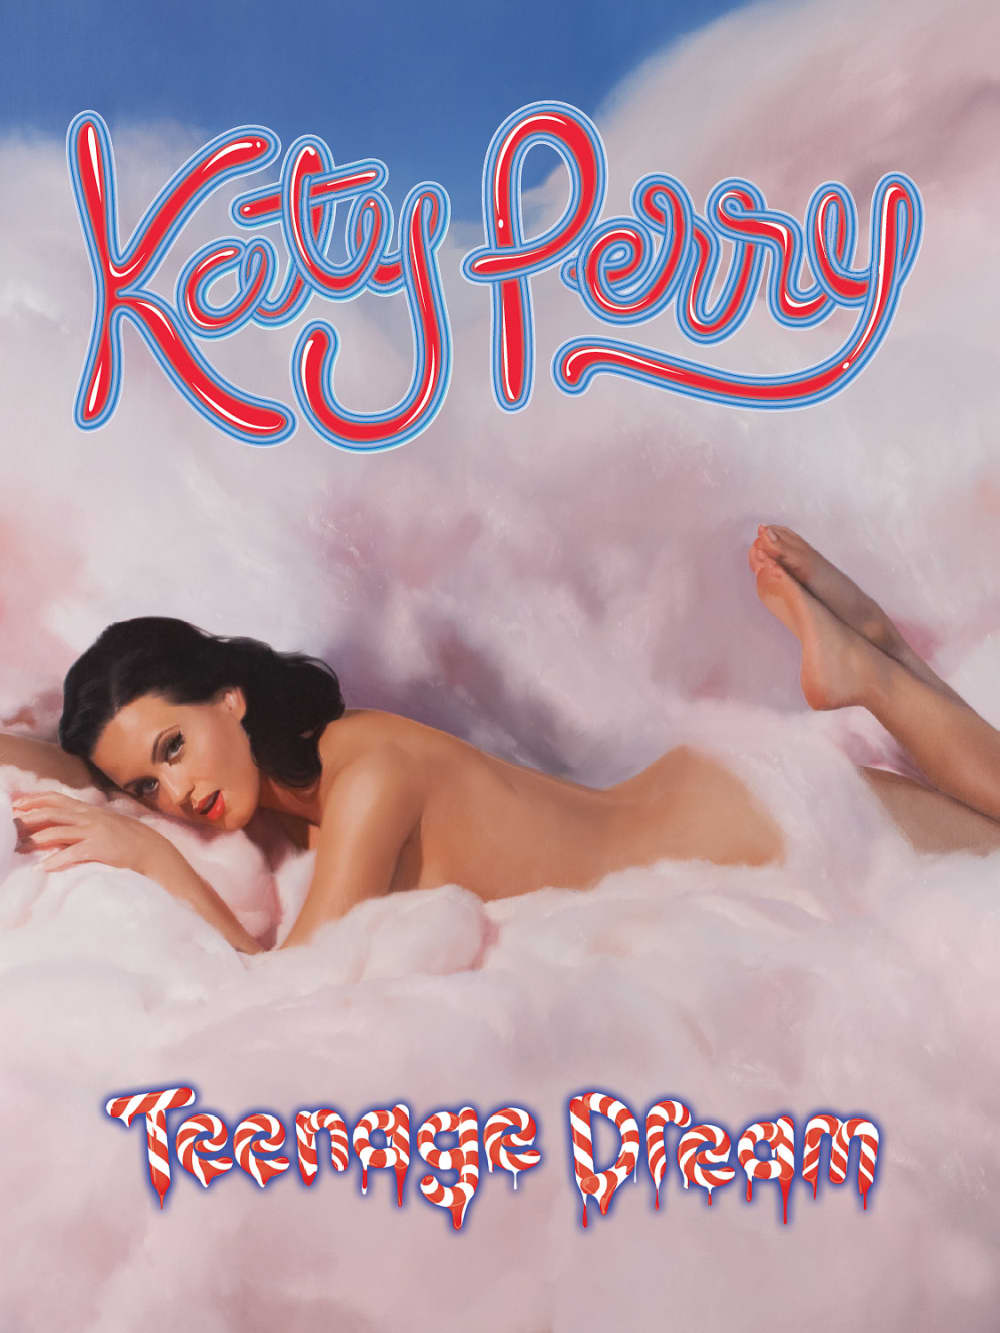 Lets keep it gospel real Teenage Dream is Katy Perrys third album